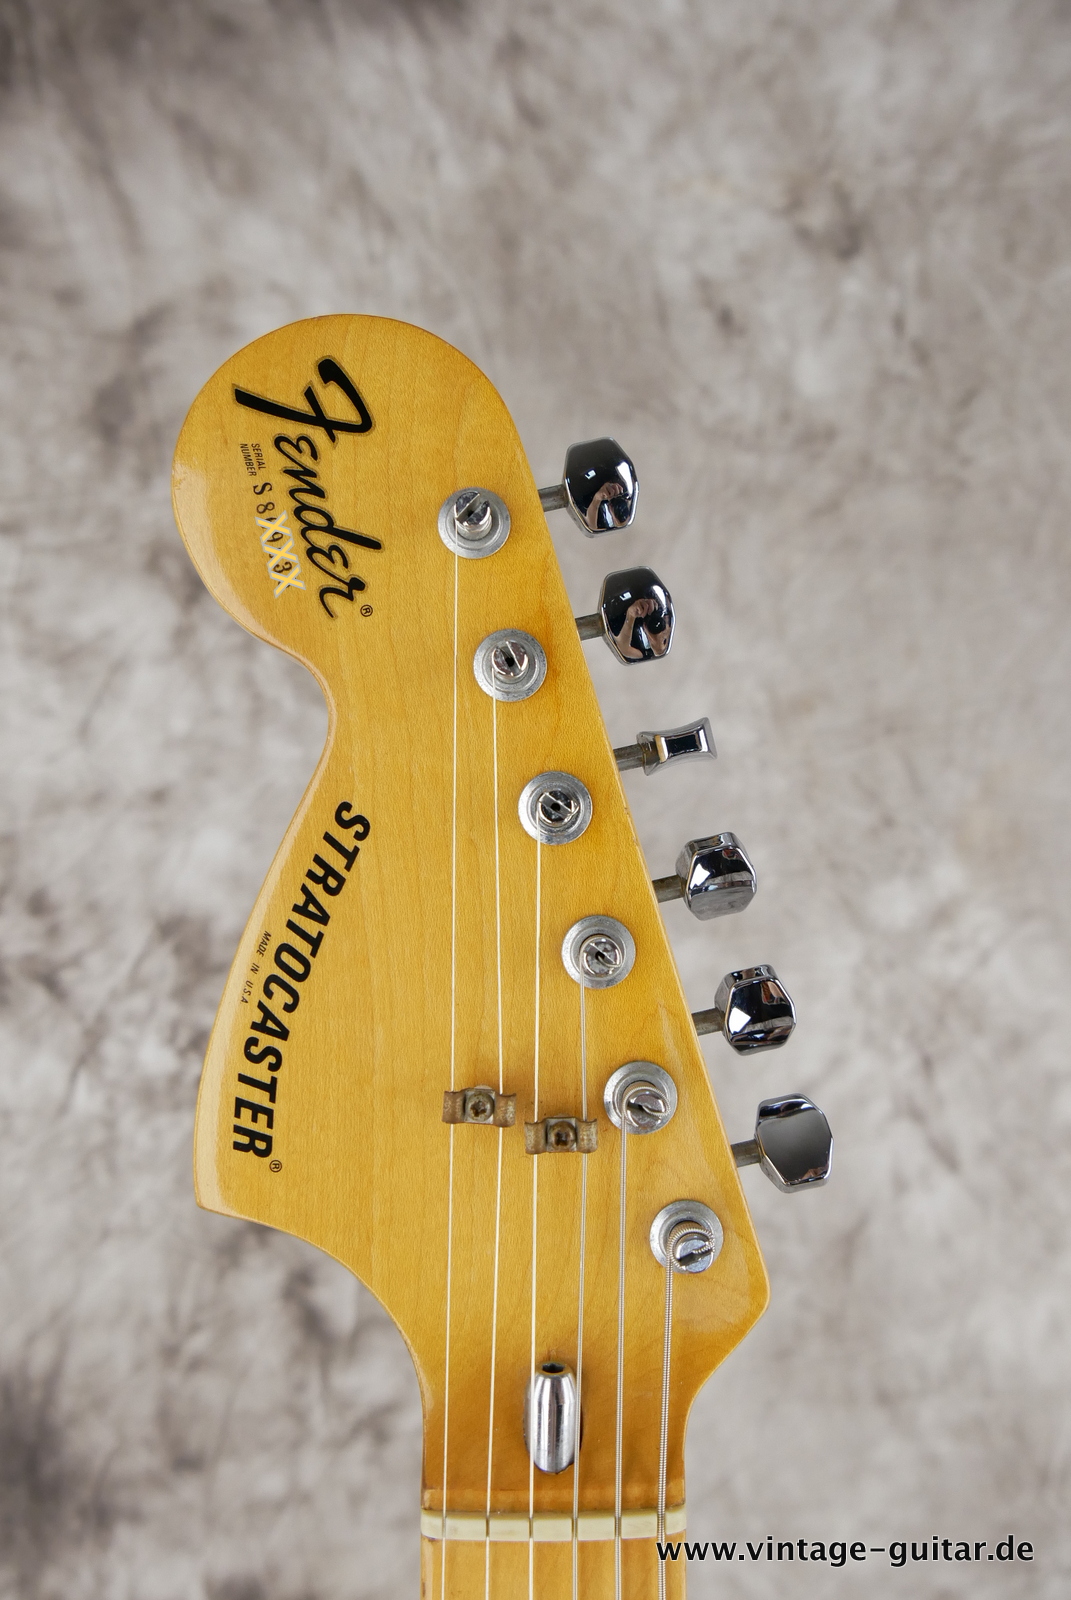 Fender_Left_Hand_Stratocaster_1980_sunburst_usa_maple_neck-003.JPG